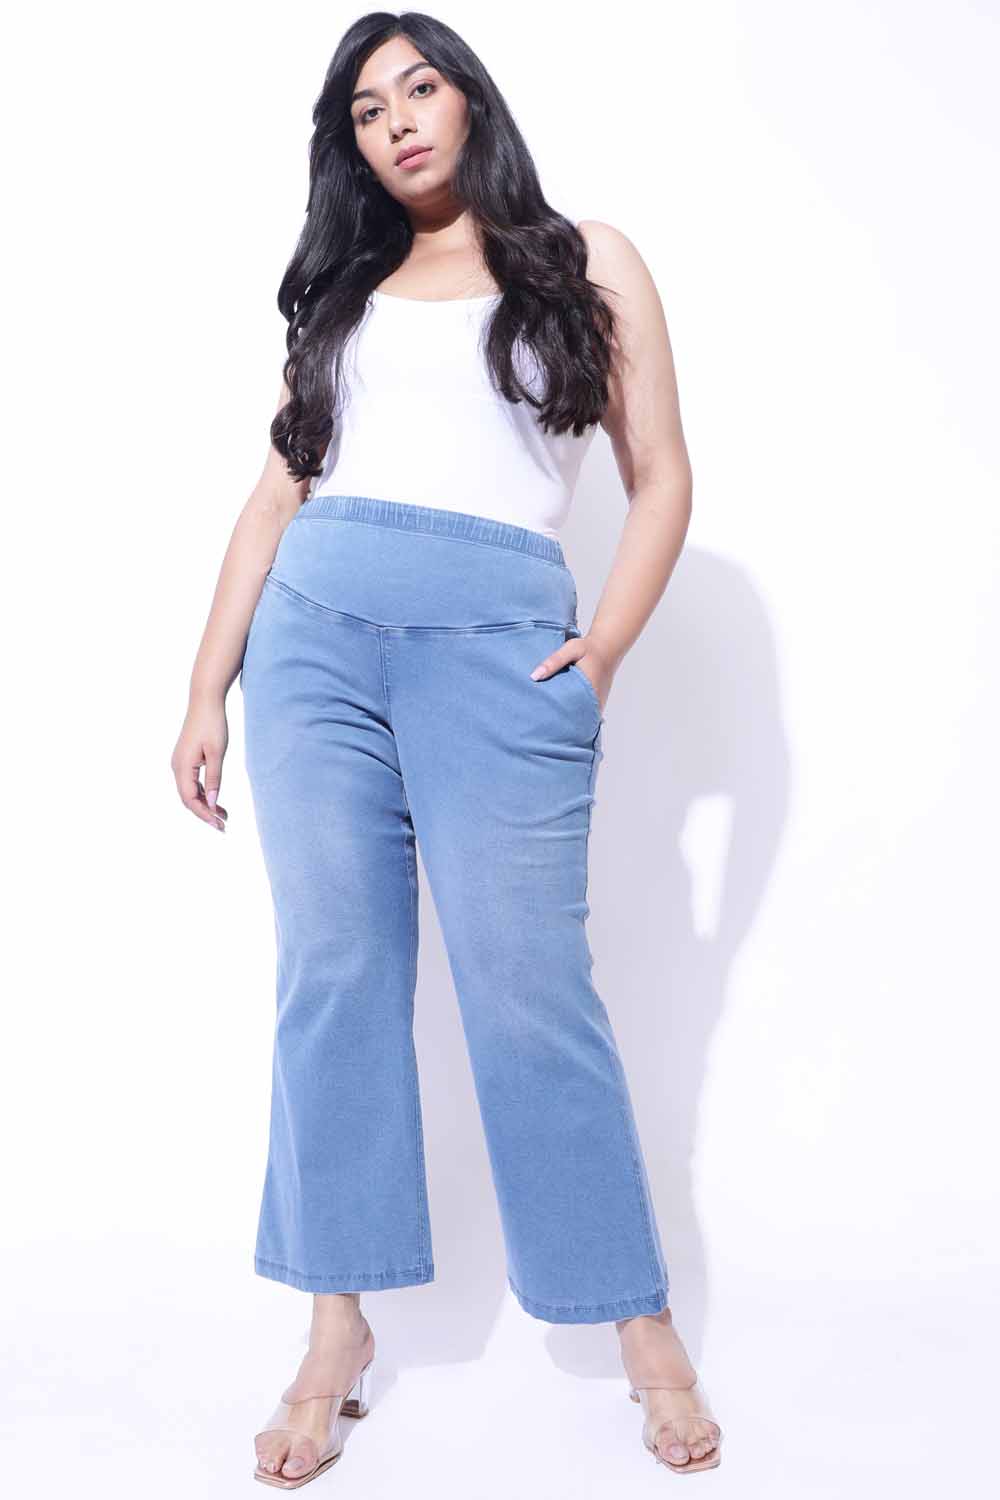 Shop 16 Jeans Xl 5xl Pants Women Large Size High Waist Leisure Long Trousers  hot pants Online